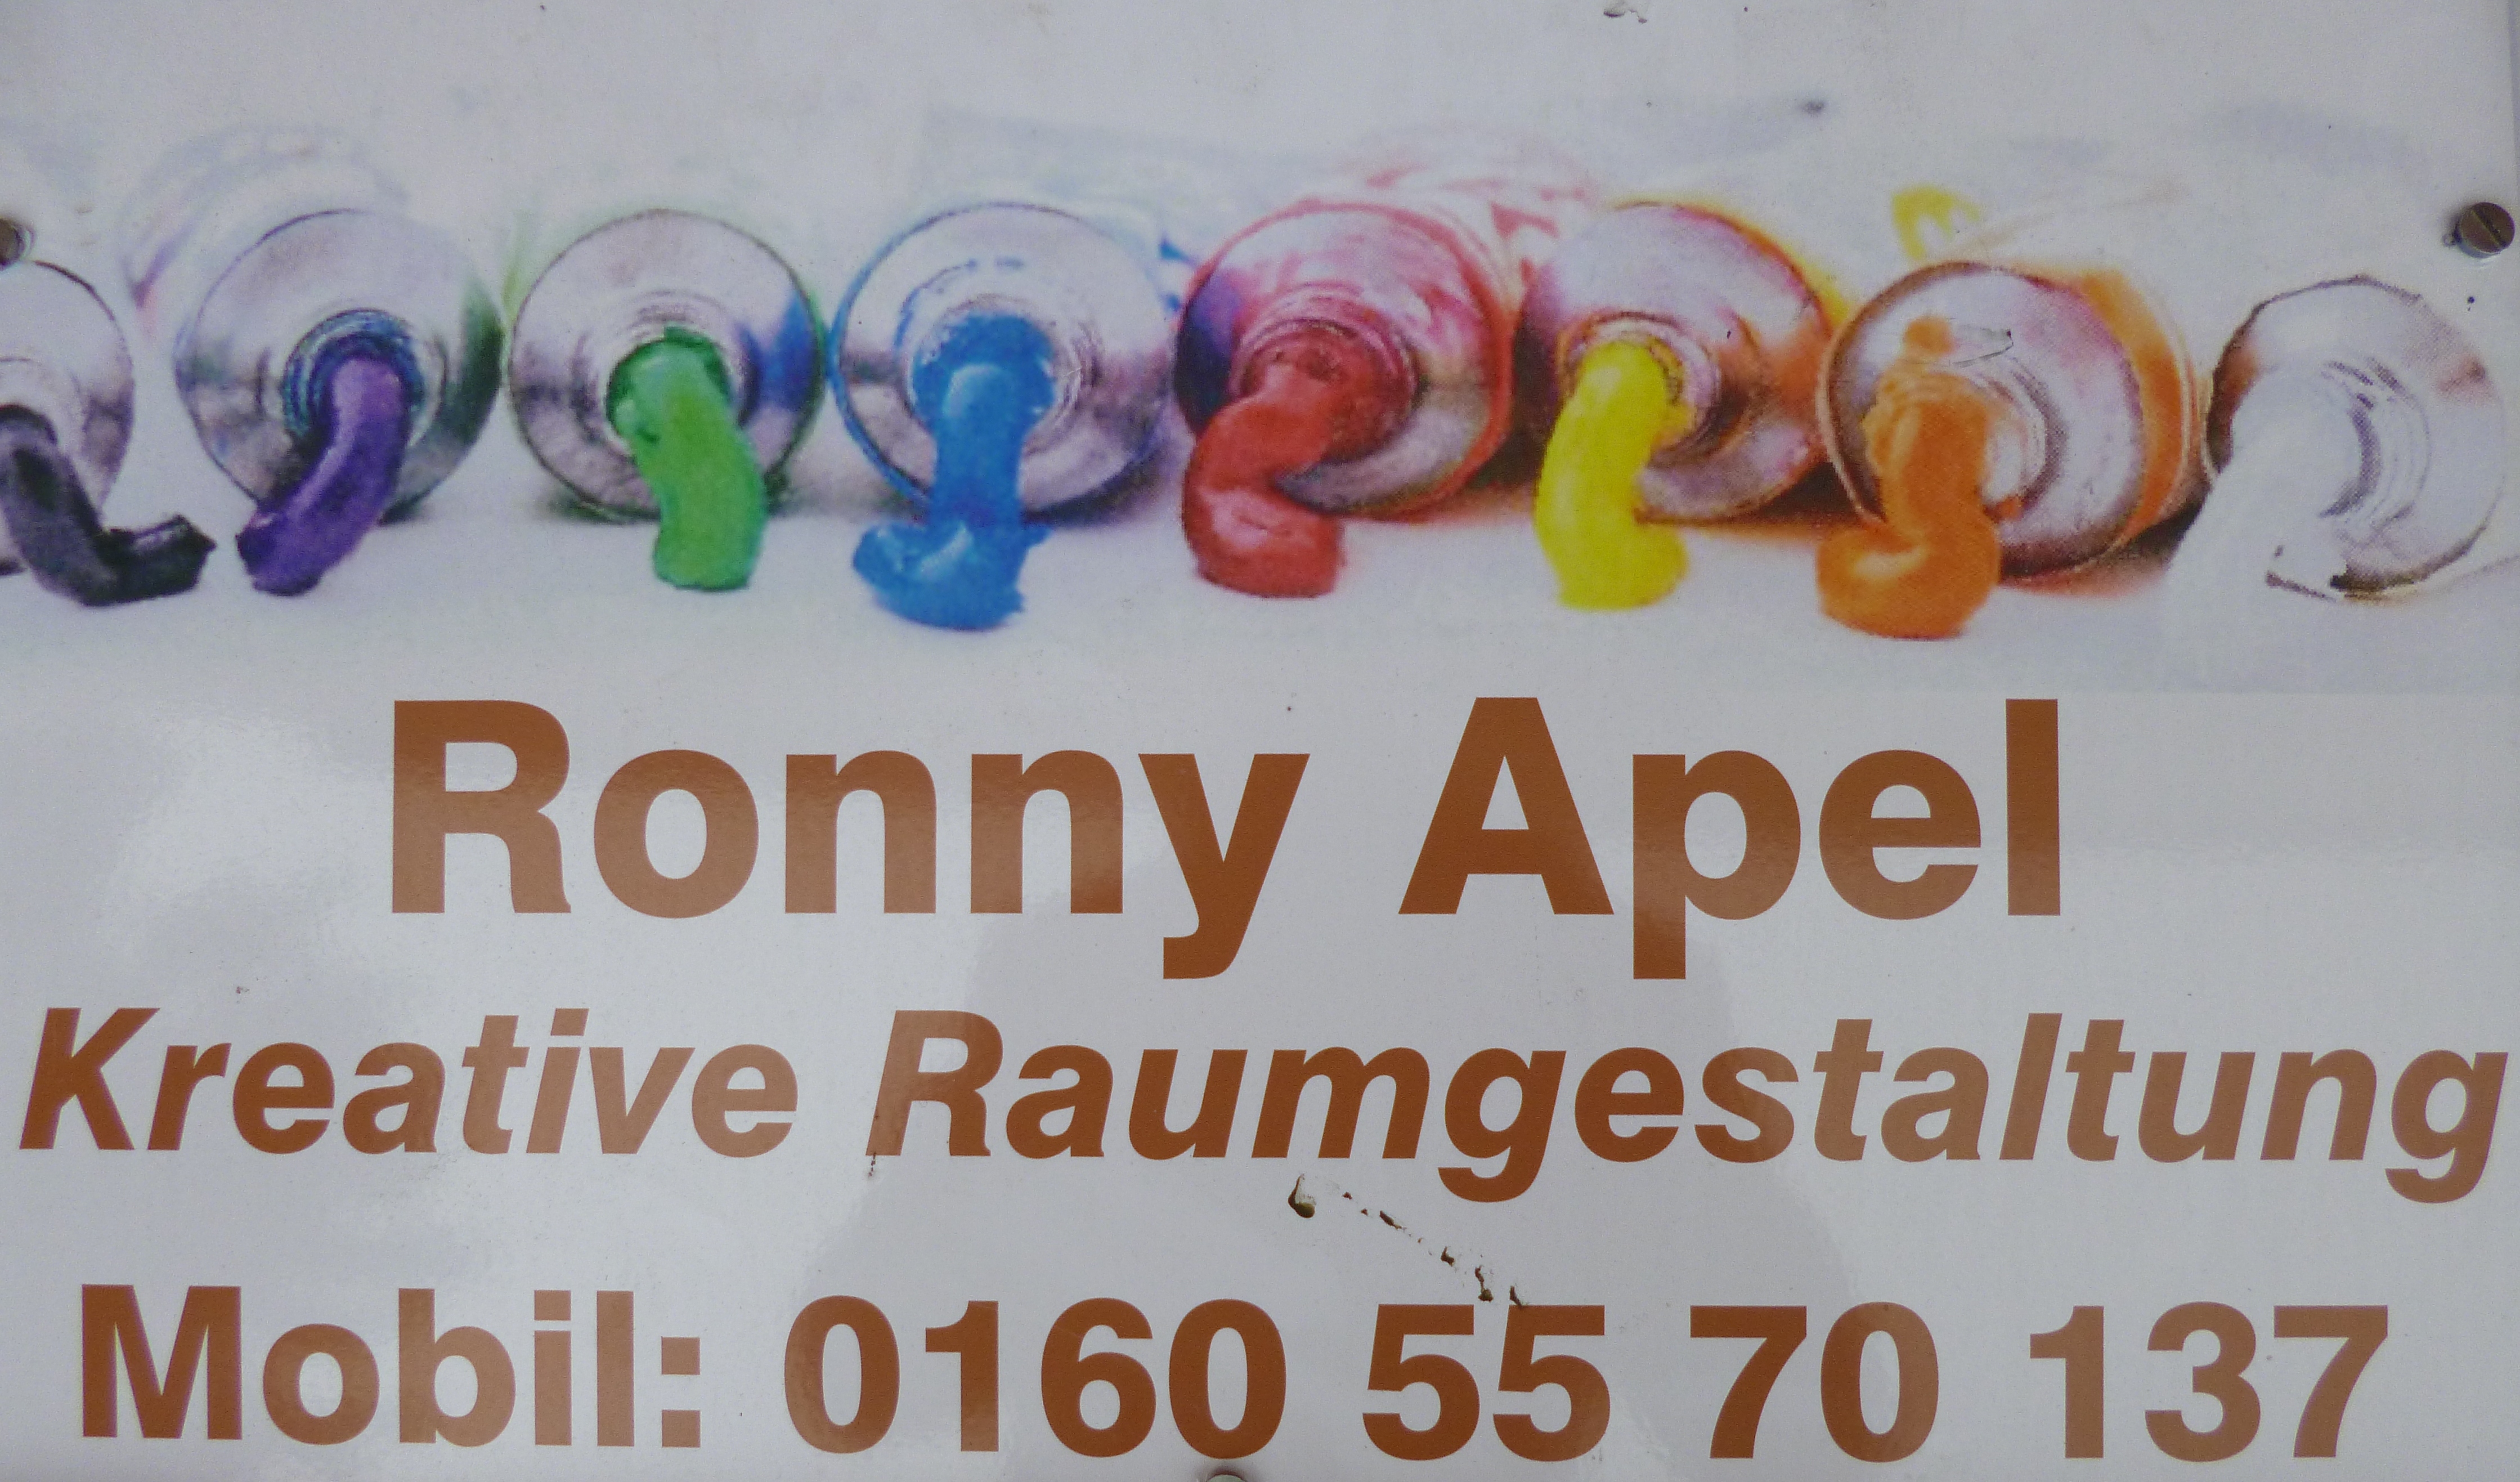 Ronny Apel